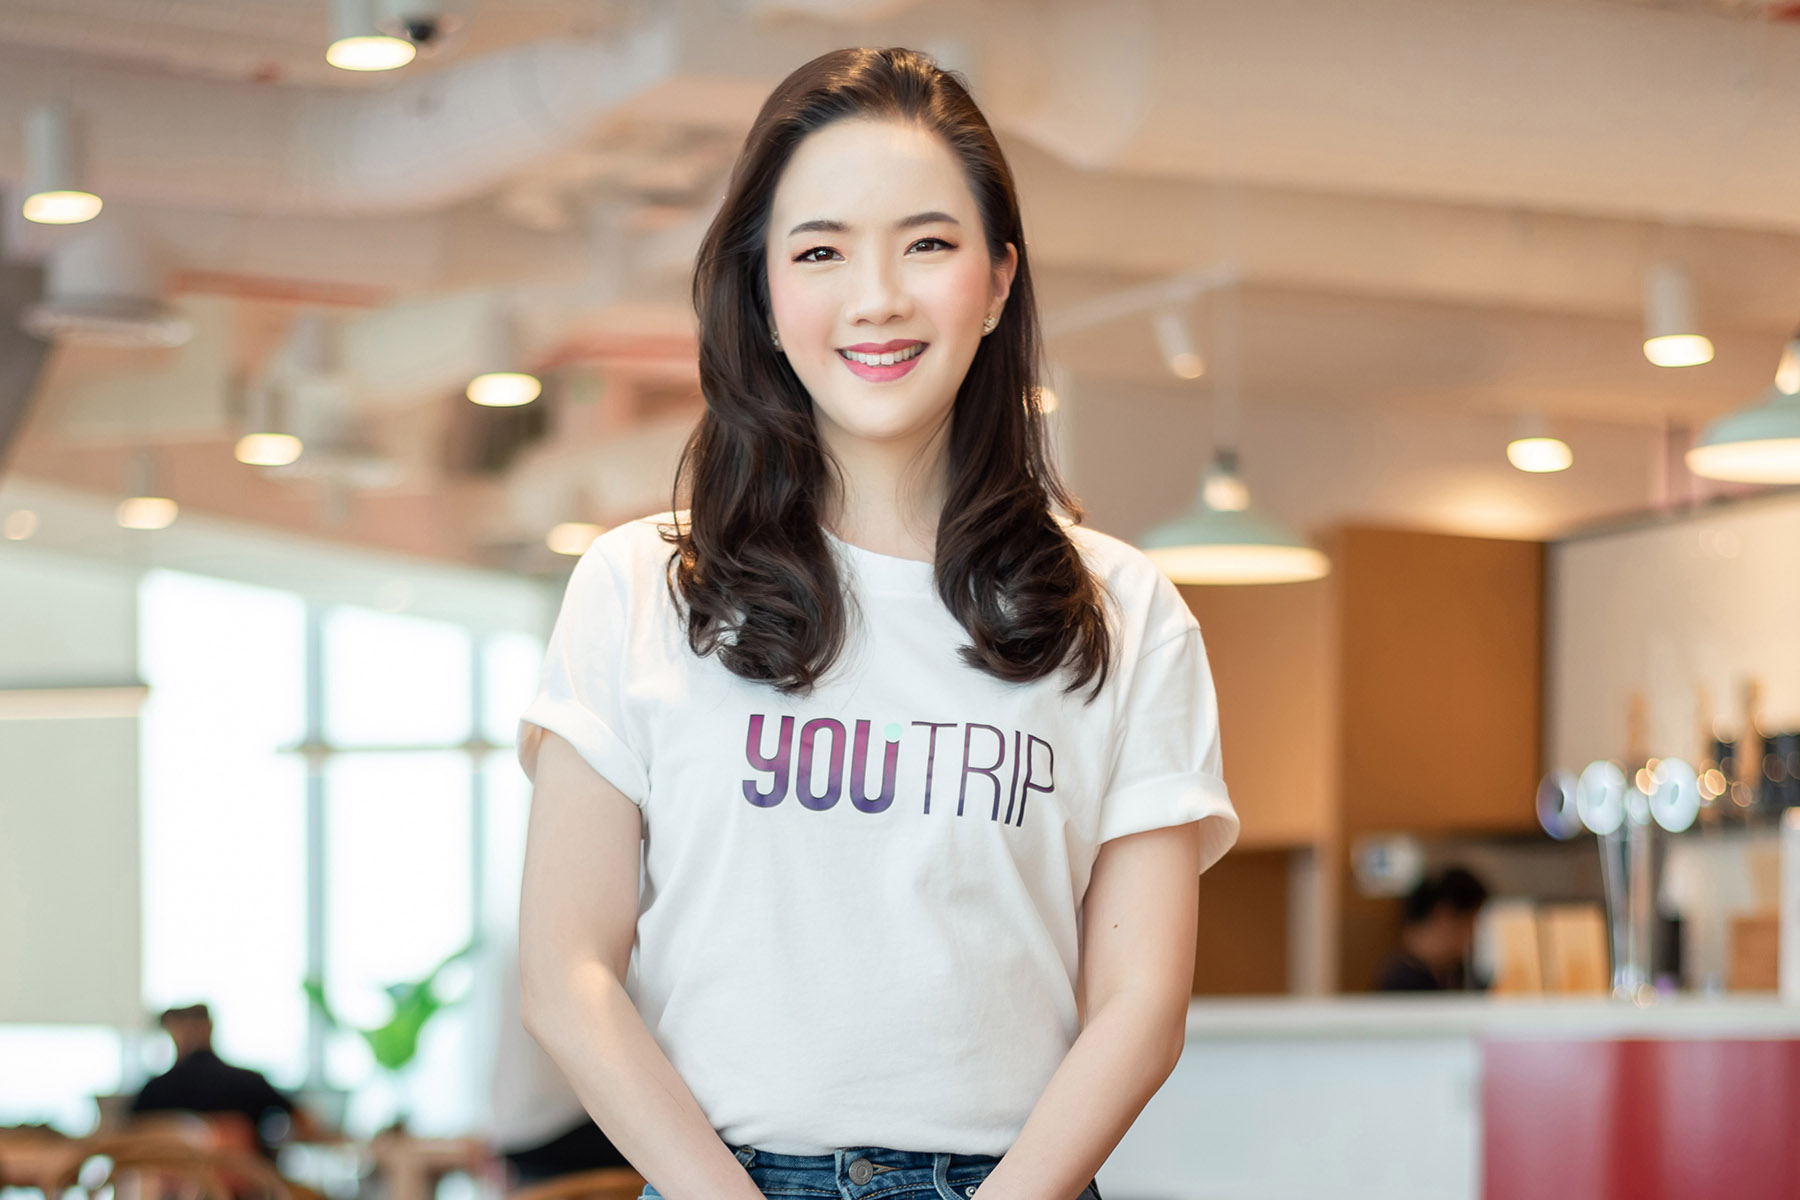 นางสาวจุฑาศรี คูวินิชกุล ผู้ร่วมก่อตั้ง YouTrip ประเทศไทย